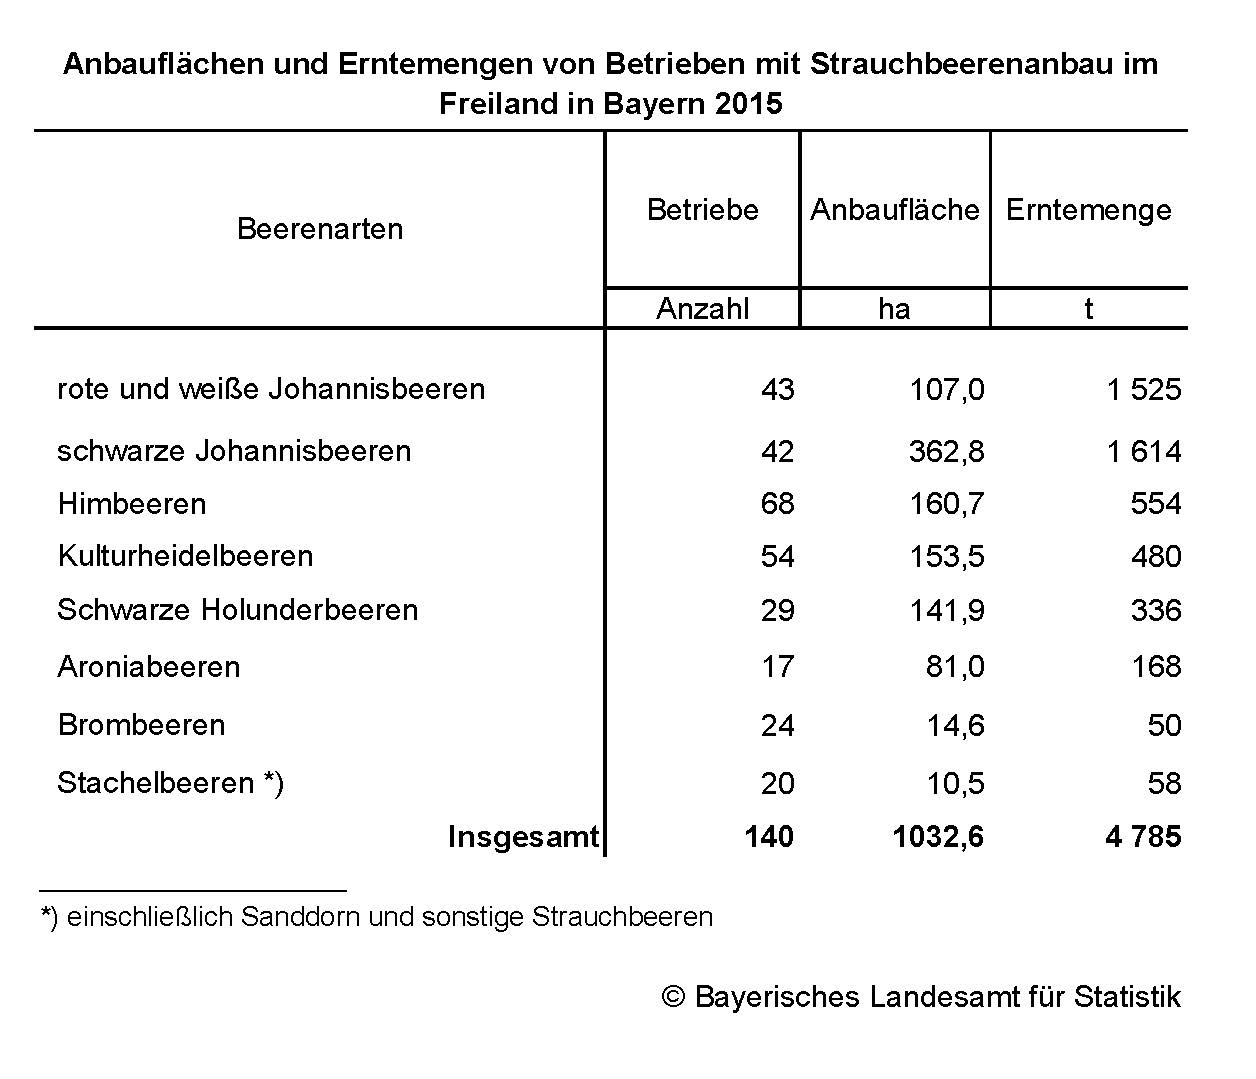 Anbauflächen und Erntemengen von Betrieben mit Strauchbeerenanbau im Freiland in Bayern 2015